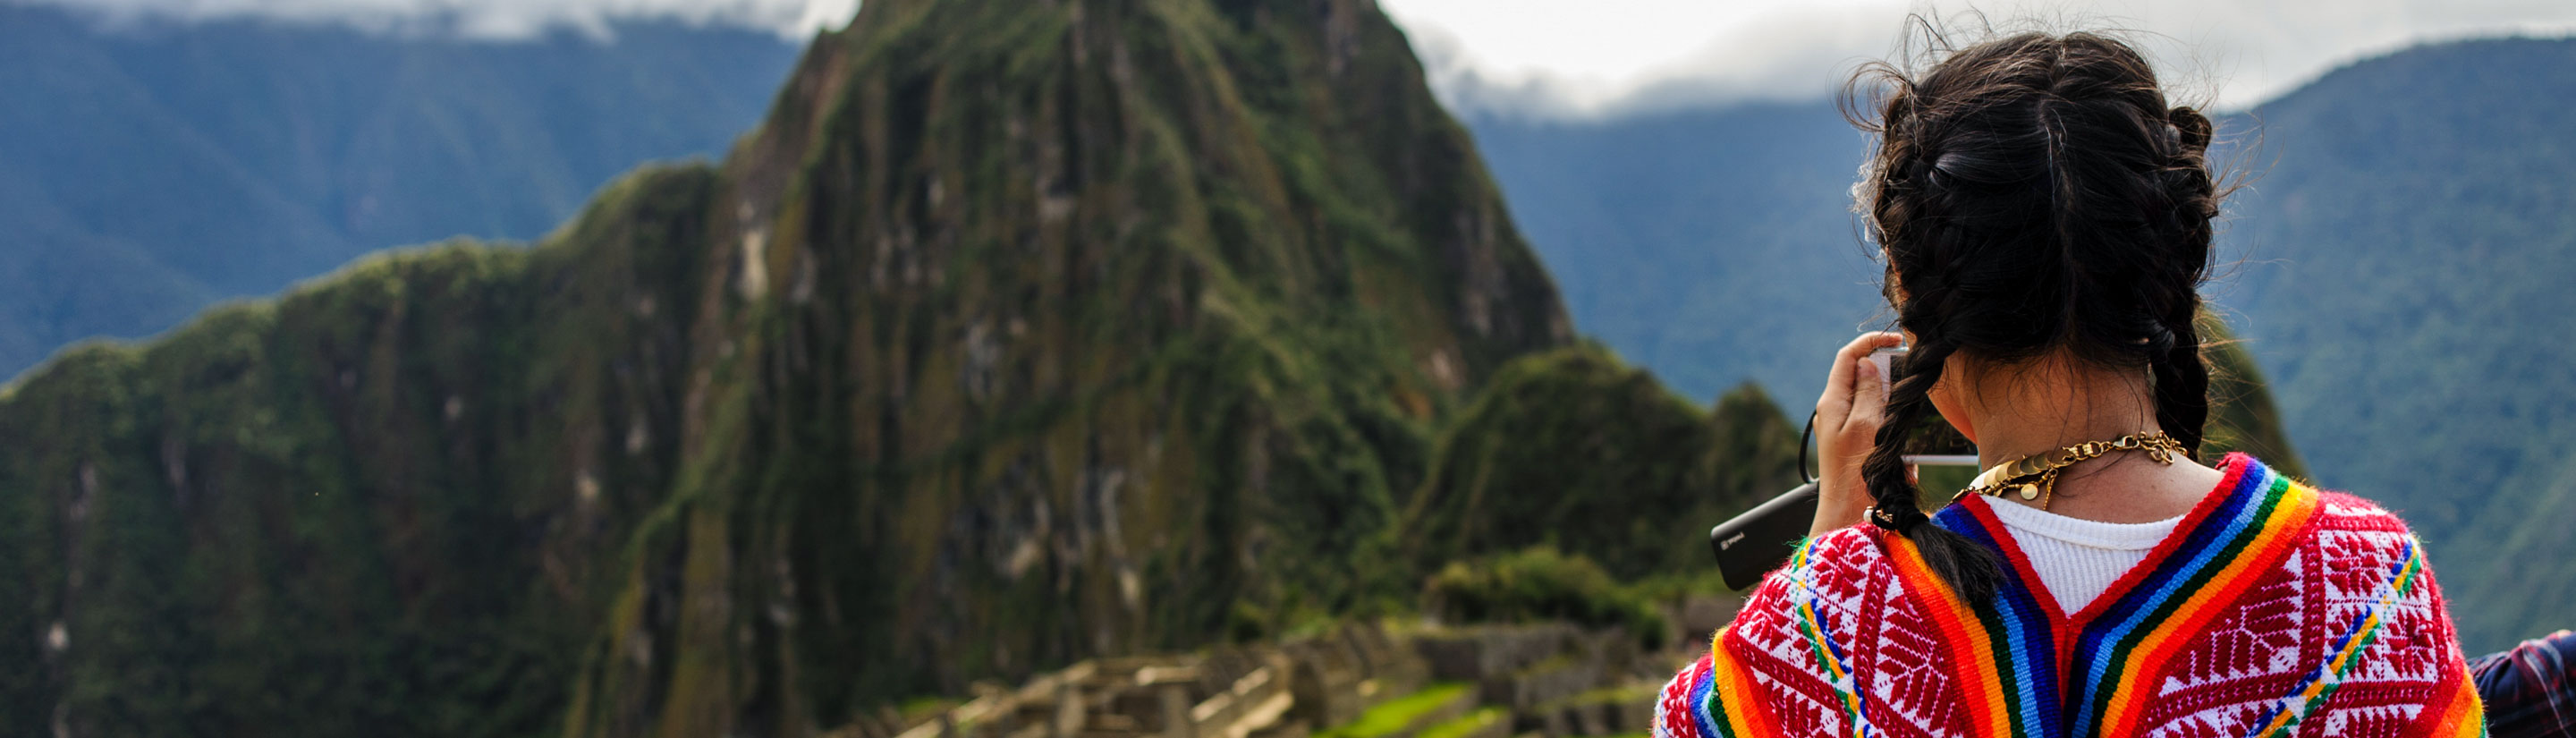 Peru-Reise: Ins Herz der Anden